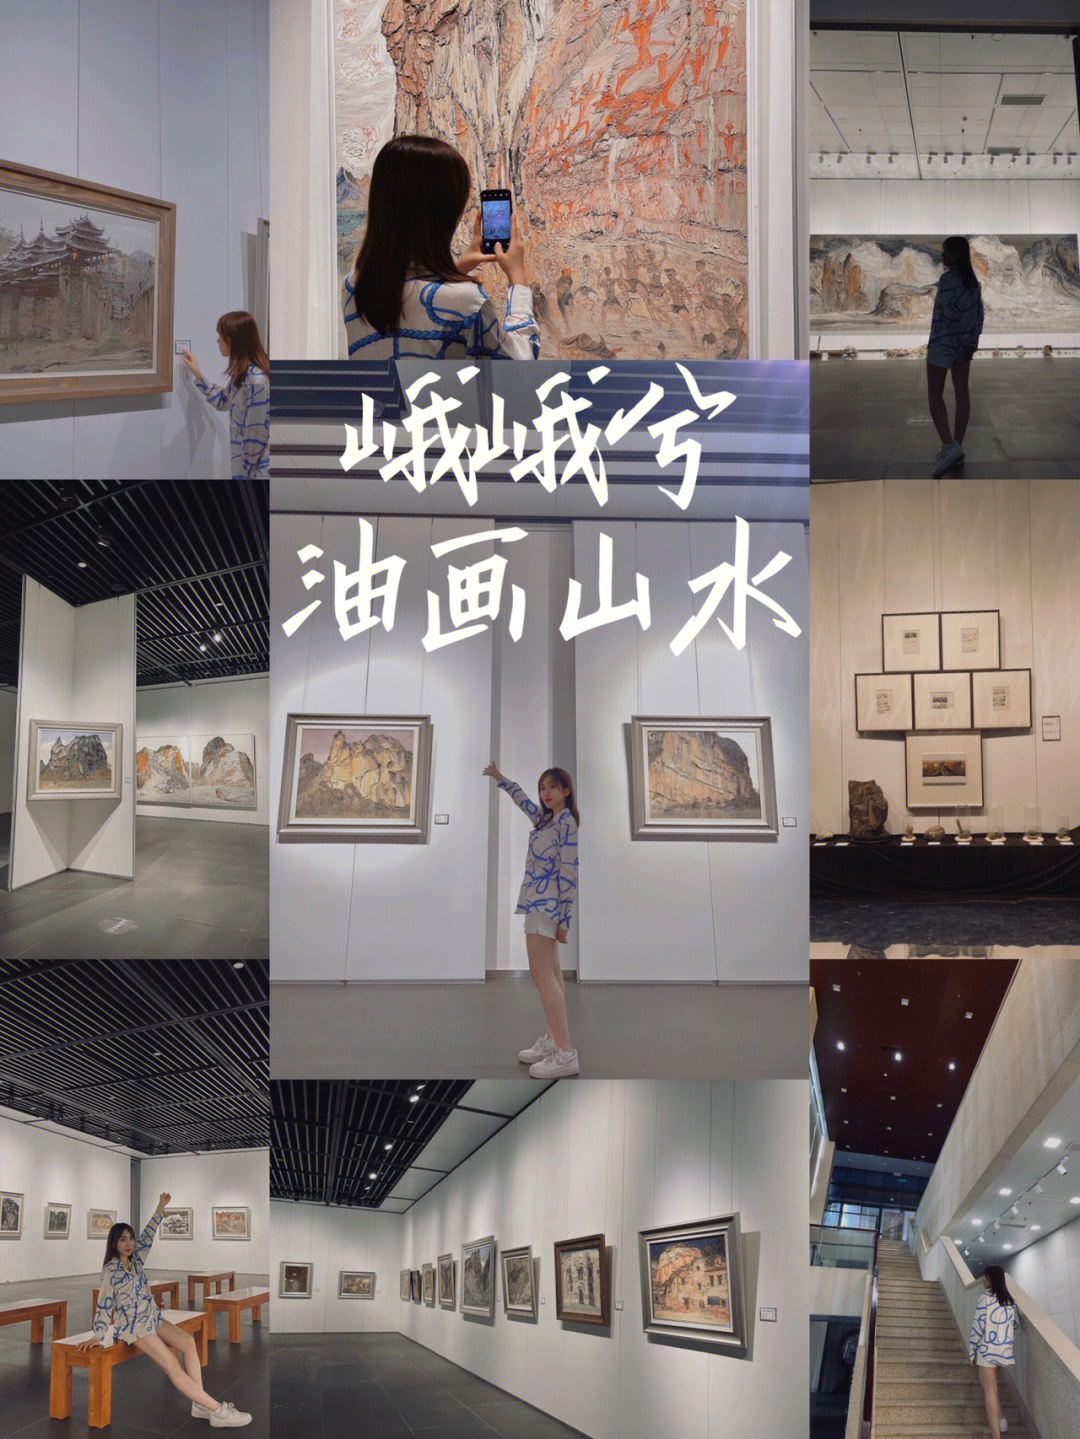 南宁免费93观画展好地方～在广西书画院美术馆,一共有3层楼油画山水